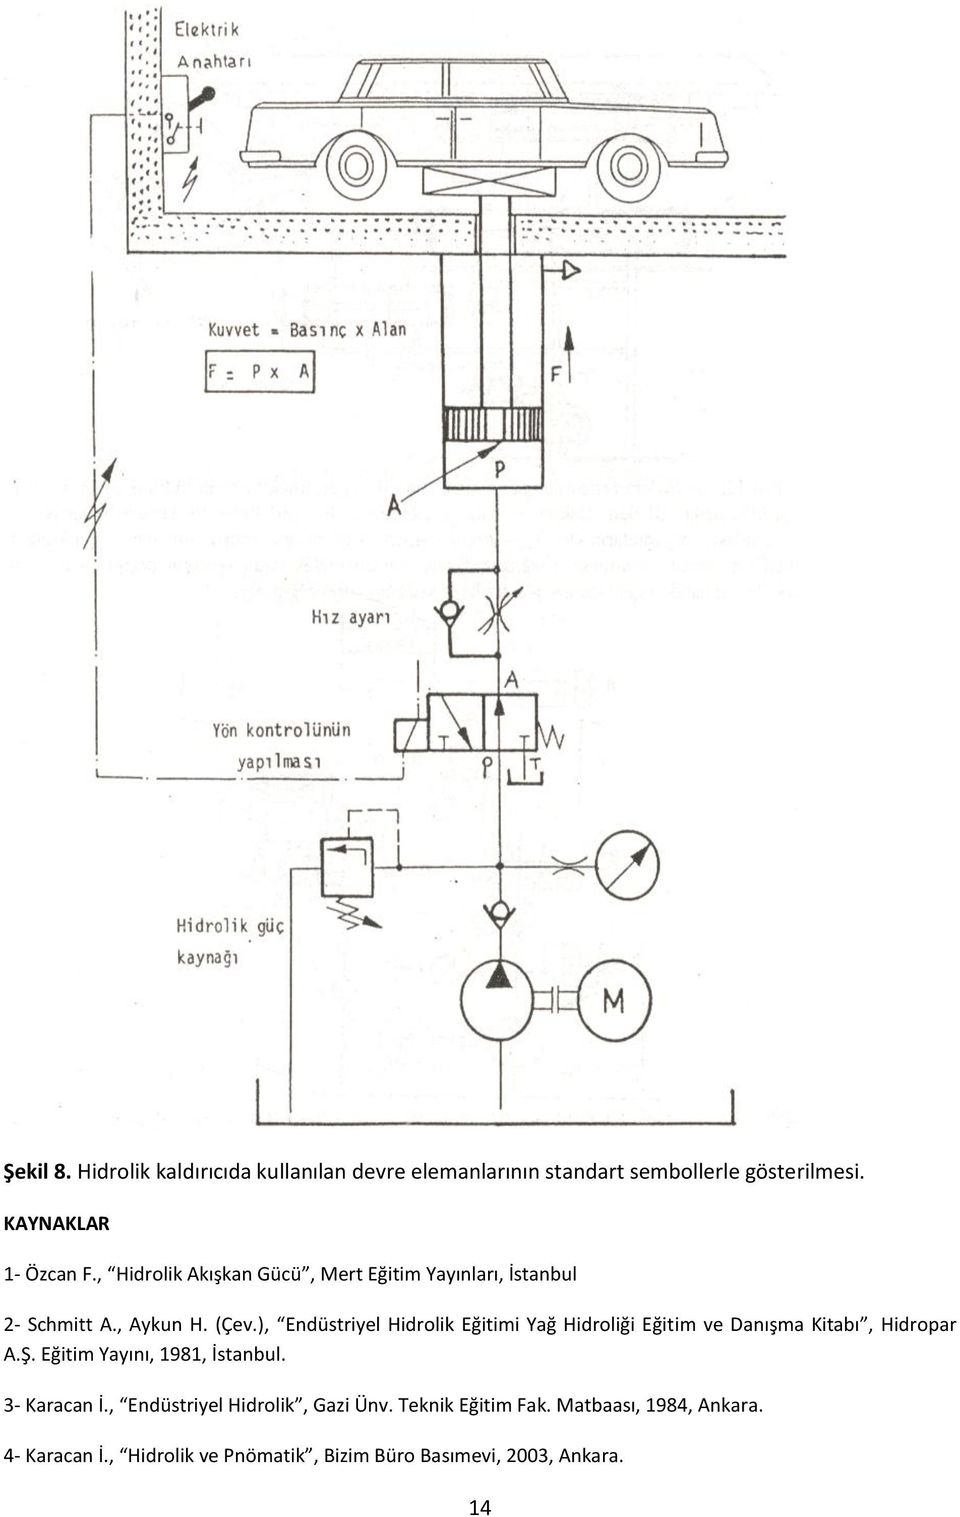 ), Endüstriyel Hidrolik Eğitimi Yağ Hidroliği Eğitim ve Danışma Kitabı, Hidropar A.Ş. Eğitim Yayını, 1981, İstanbul.